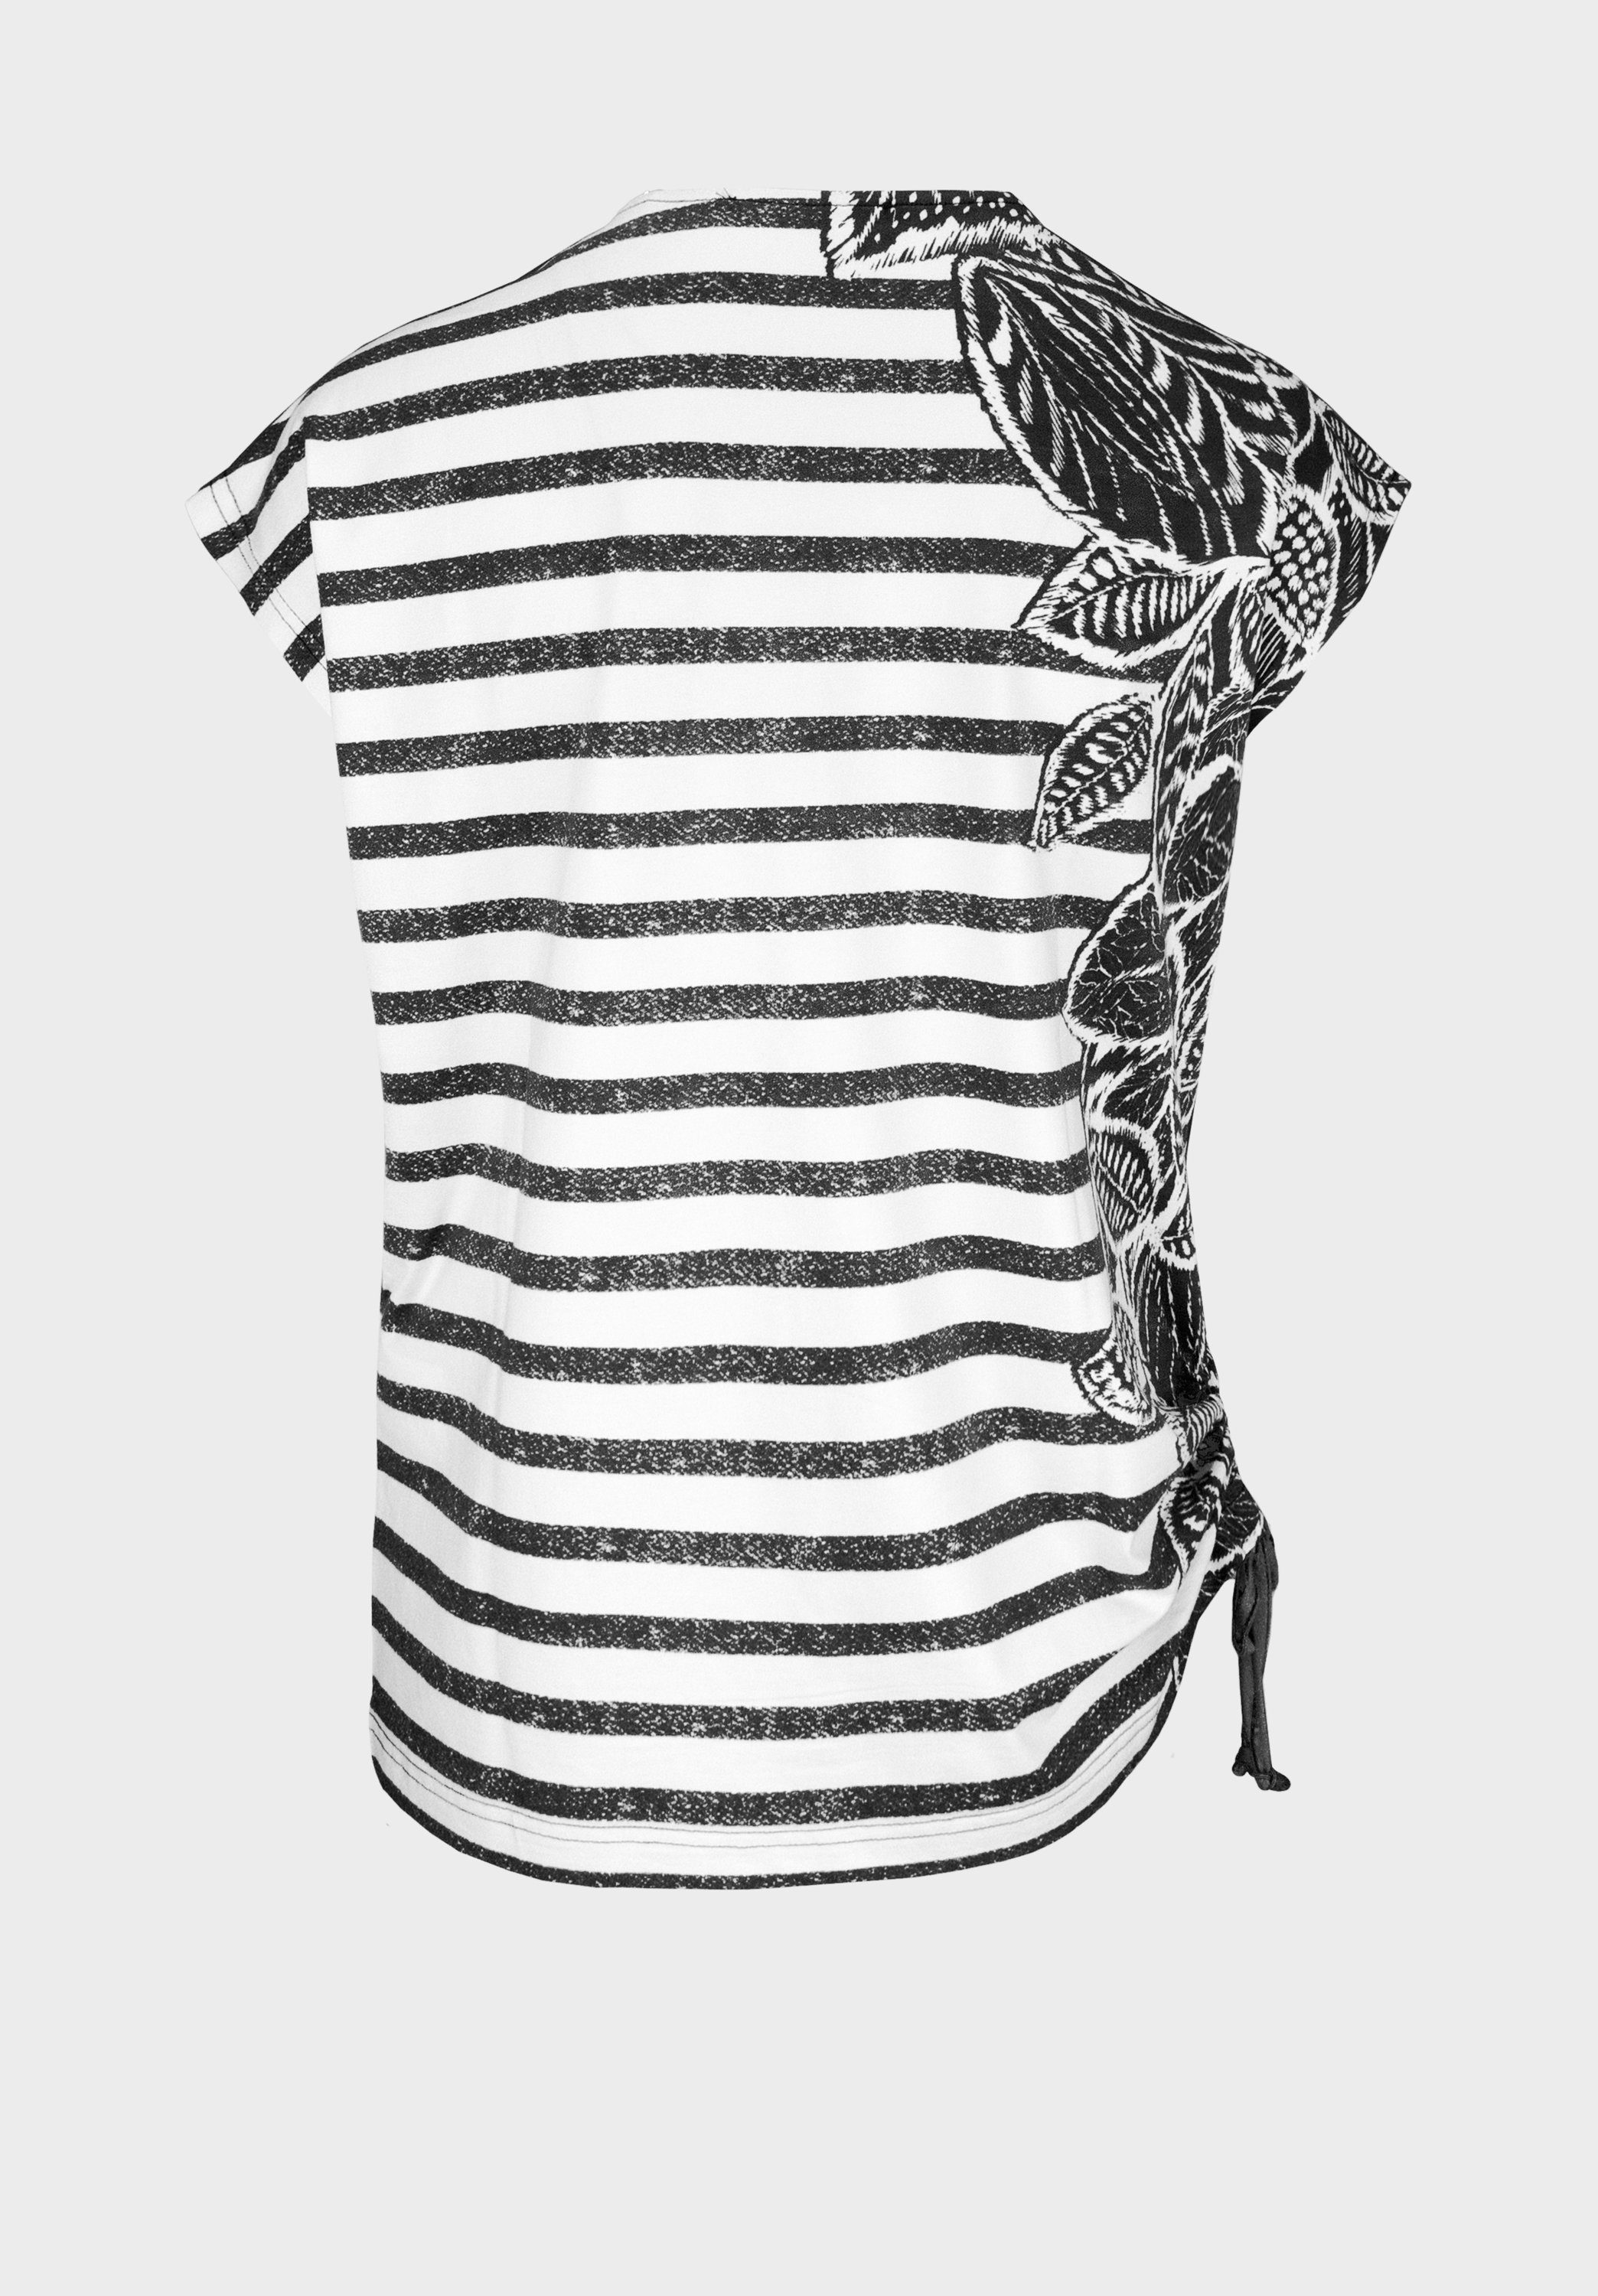 Print-Shirt Palmen-Print JULIE bianca mit Streifen aus mix und grey Design modernem